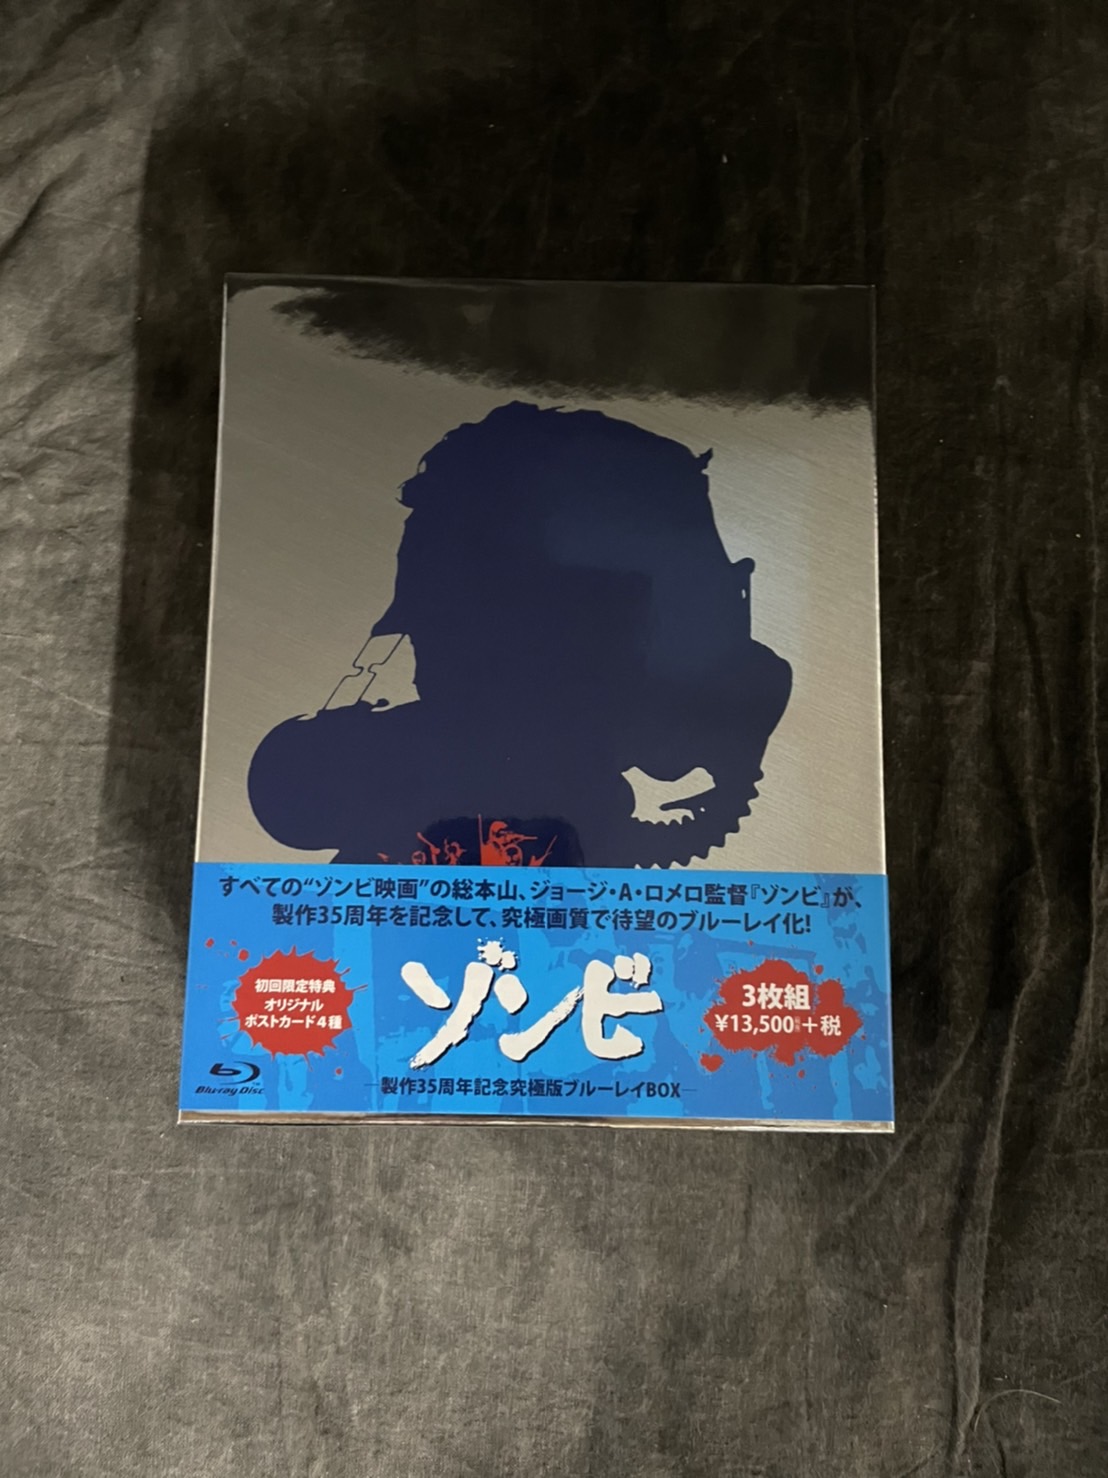 【貴重・廃盤】『ゾンビ』製作35周年記念究極版Blu-ray BOX 3枚組